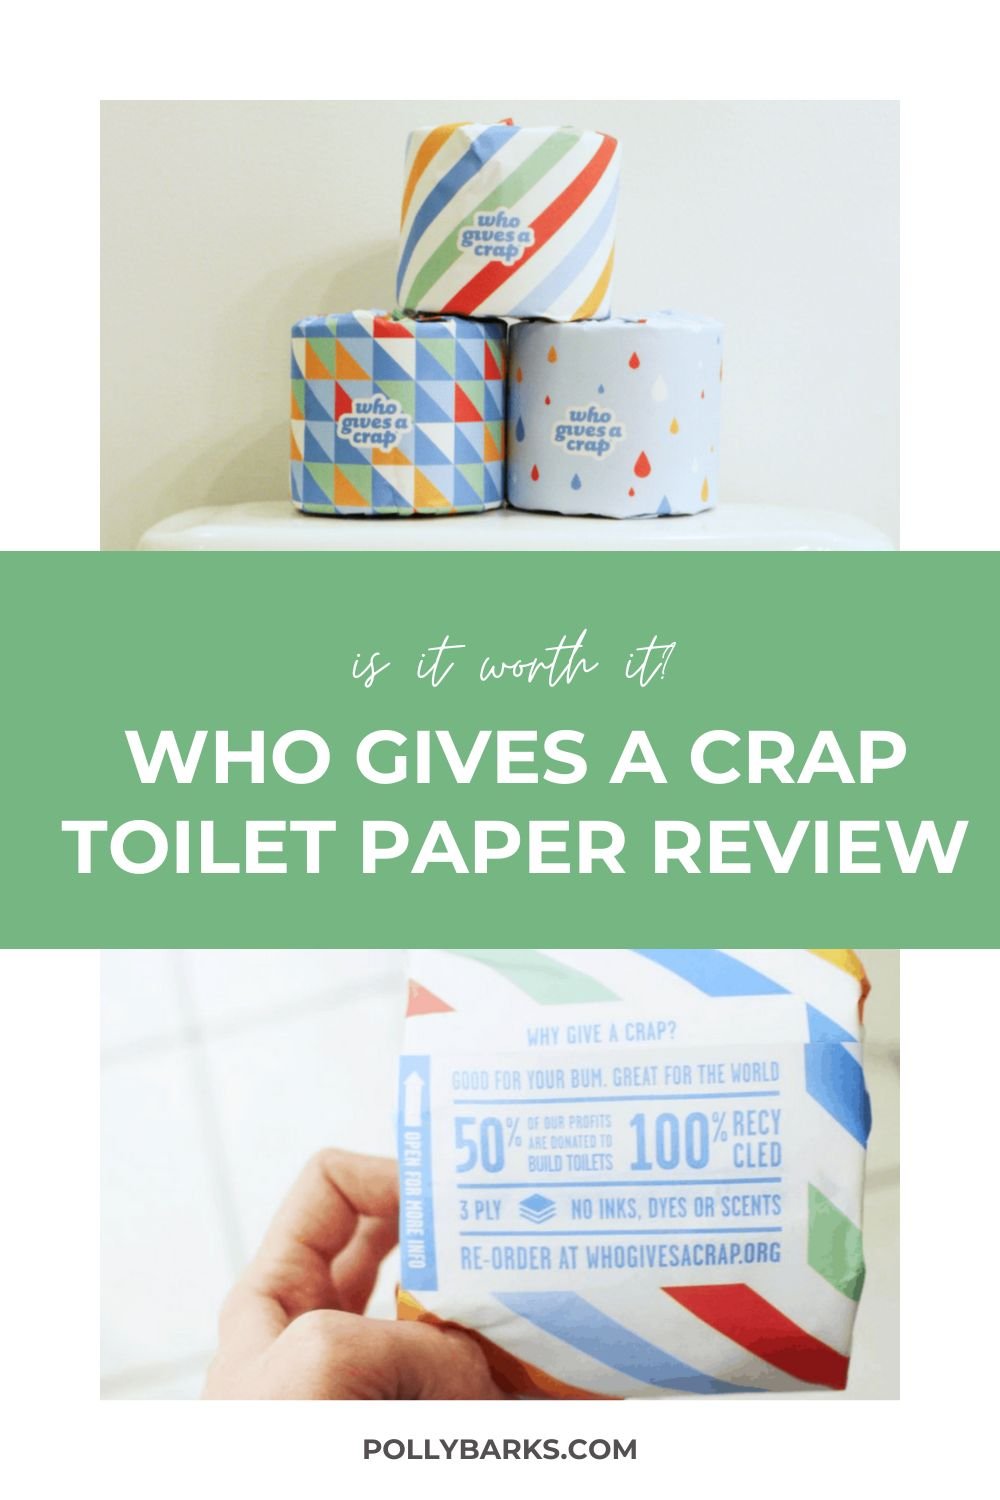 Toilet paper that builds toilets